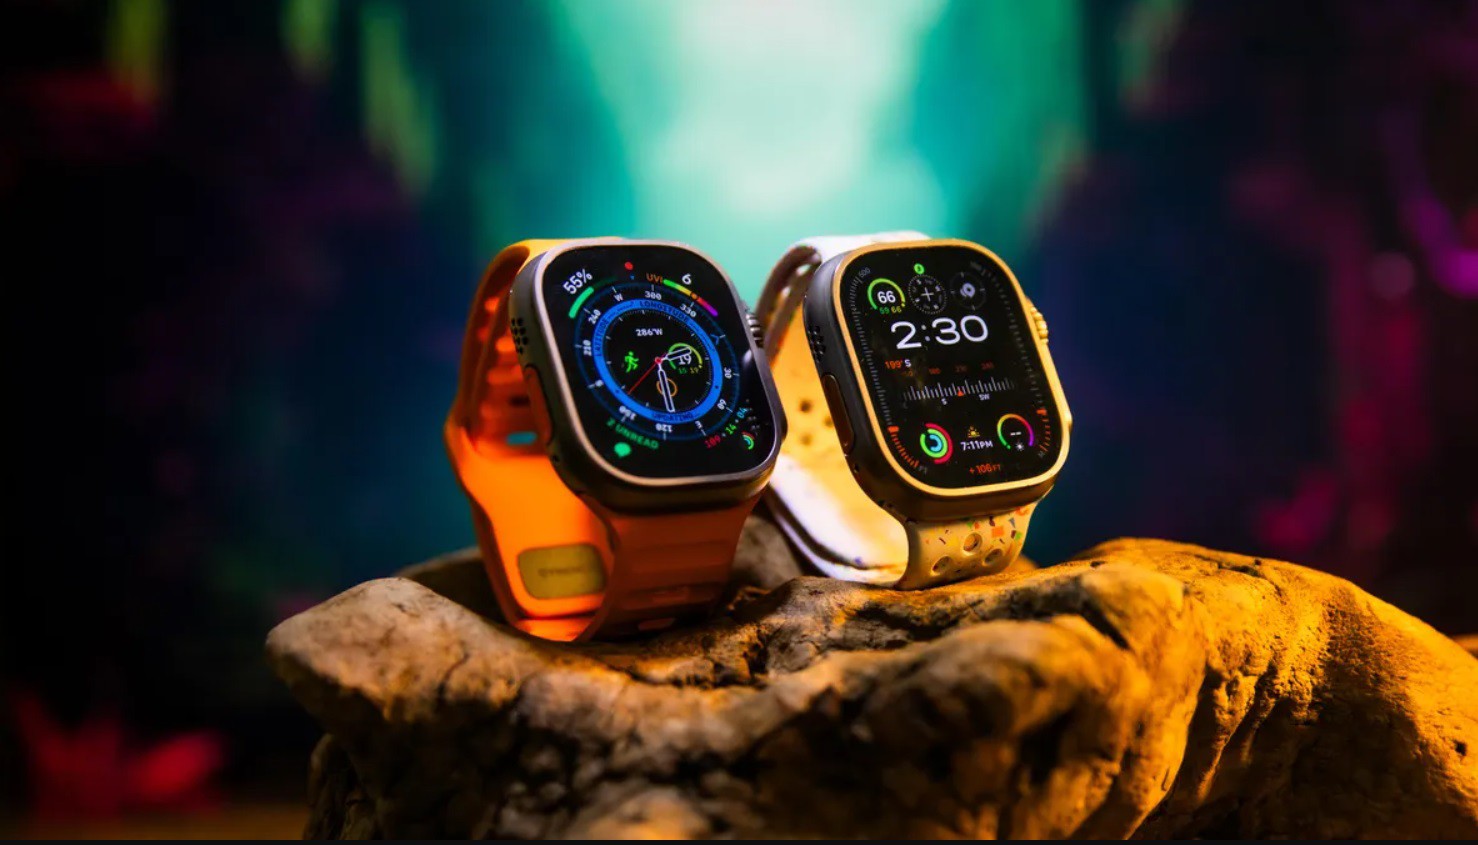 Apple Watch Ultra 2: Chiếc đồng hồ được yêu thích nhất hiện nay - 8